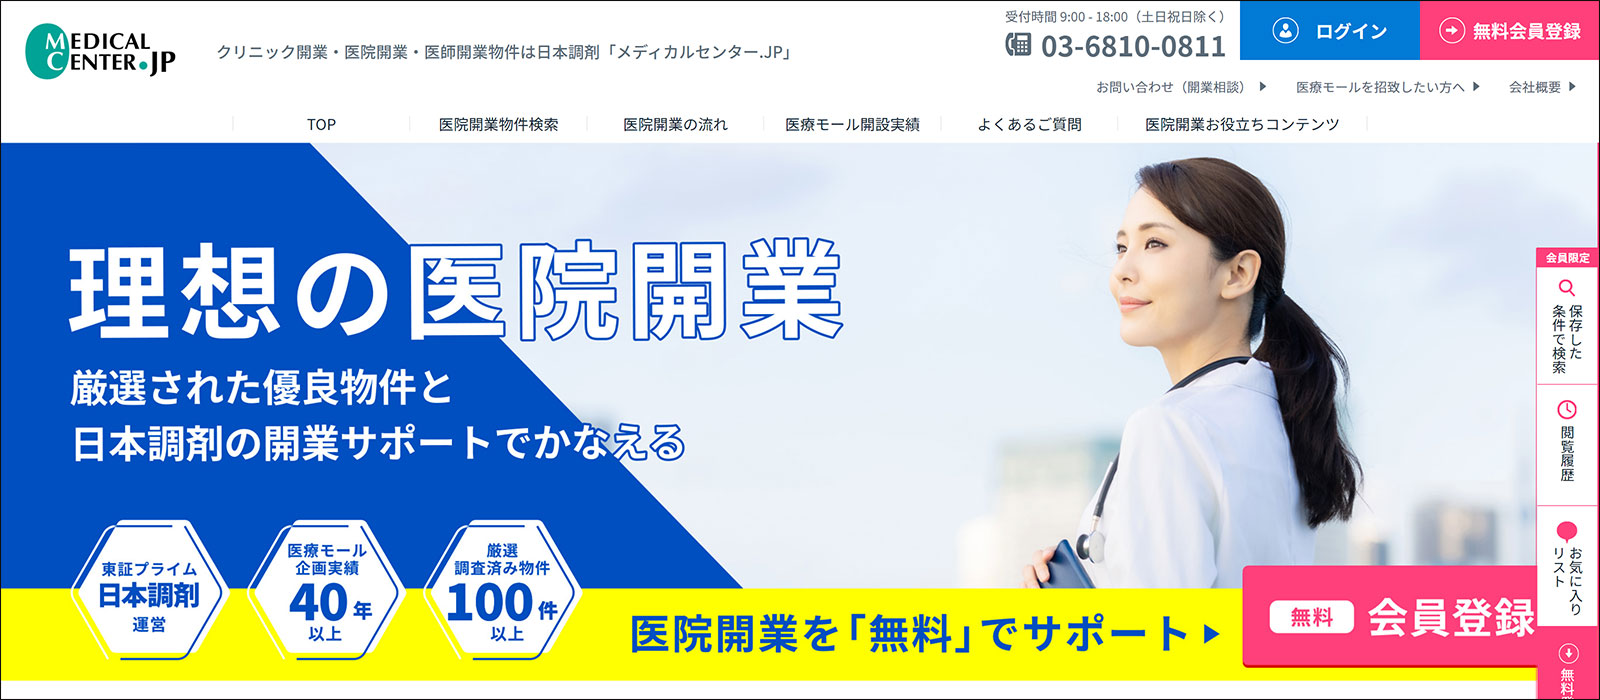 日本調剤の医院・クリニック開業支援サイト「メディカルセンター.JP」TOPページ